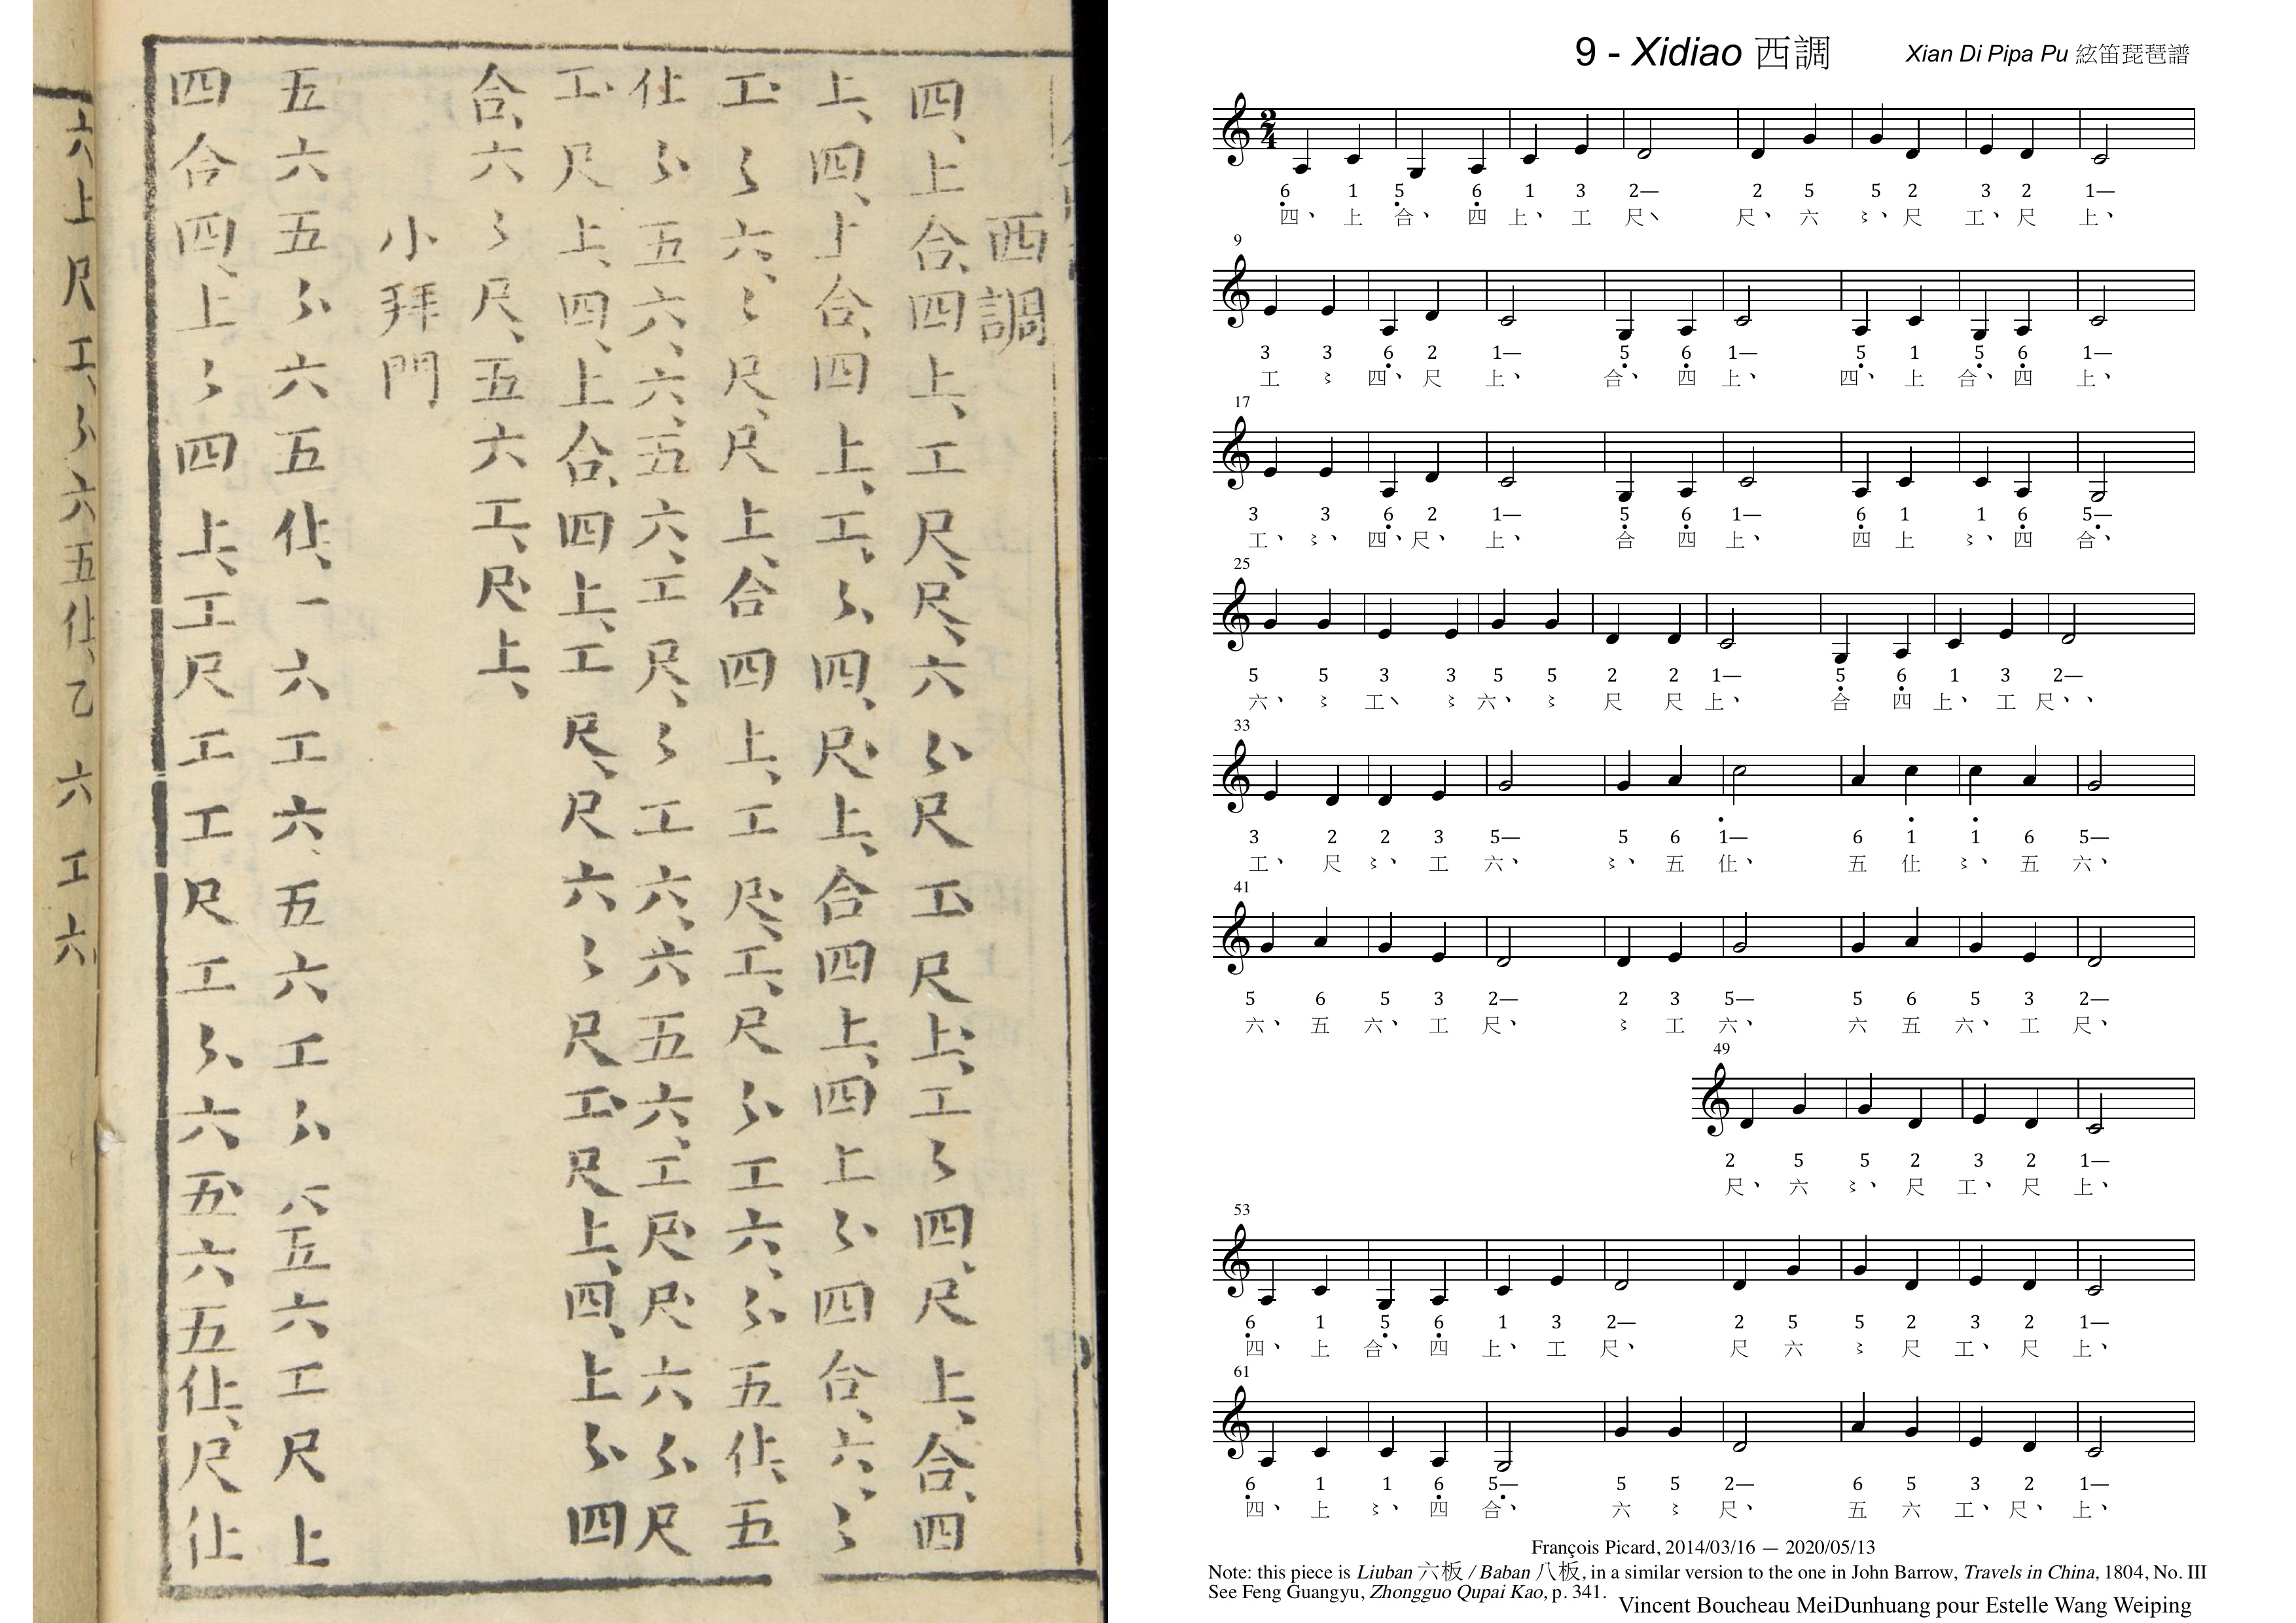 Xi Diao musical score